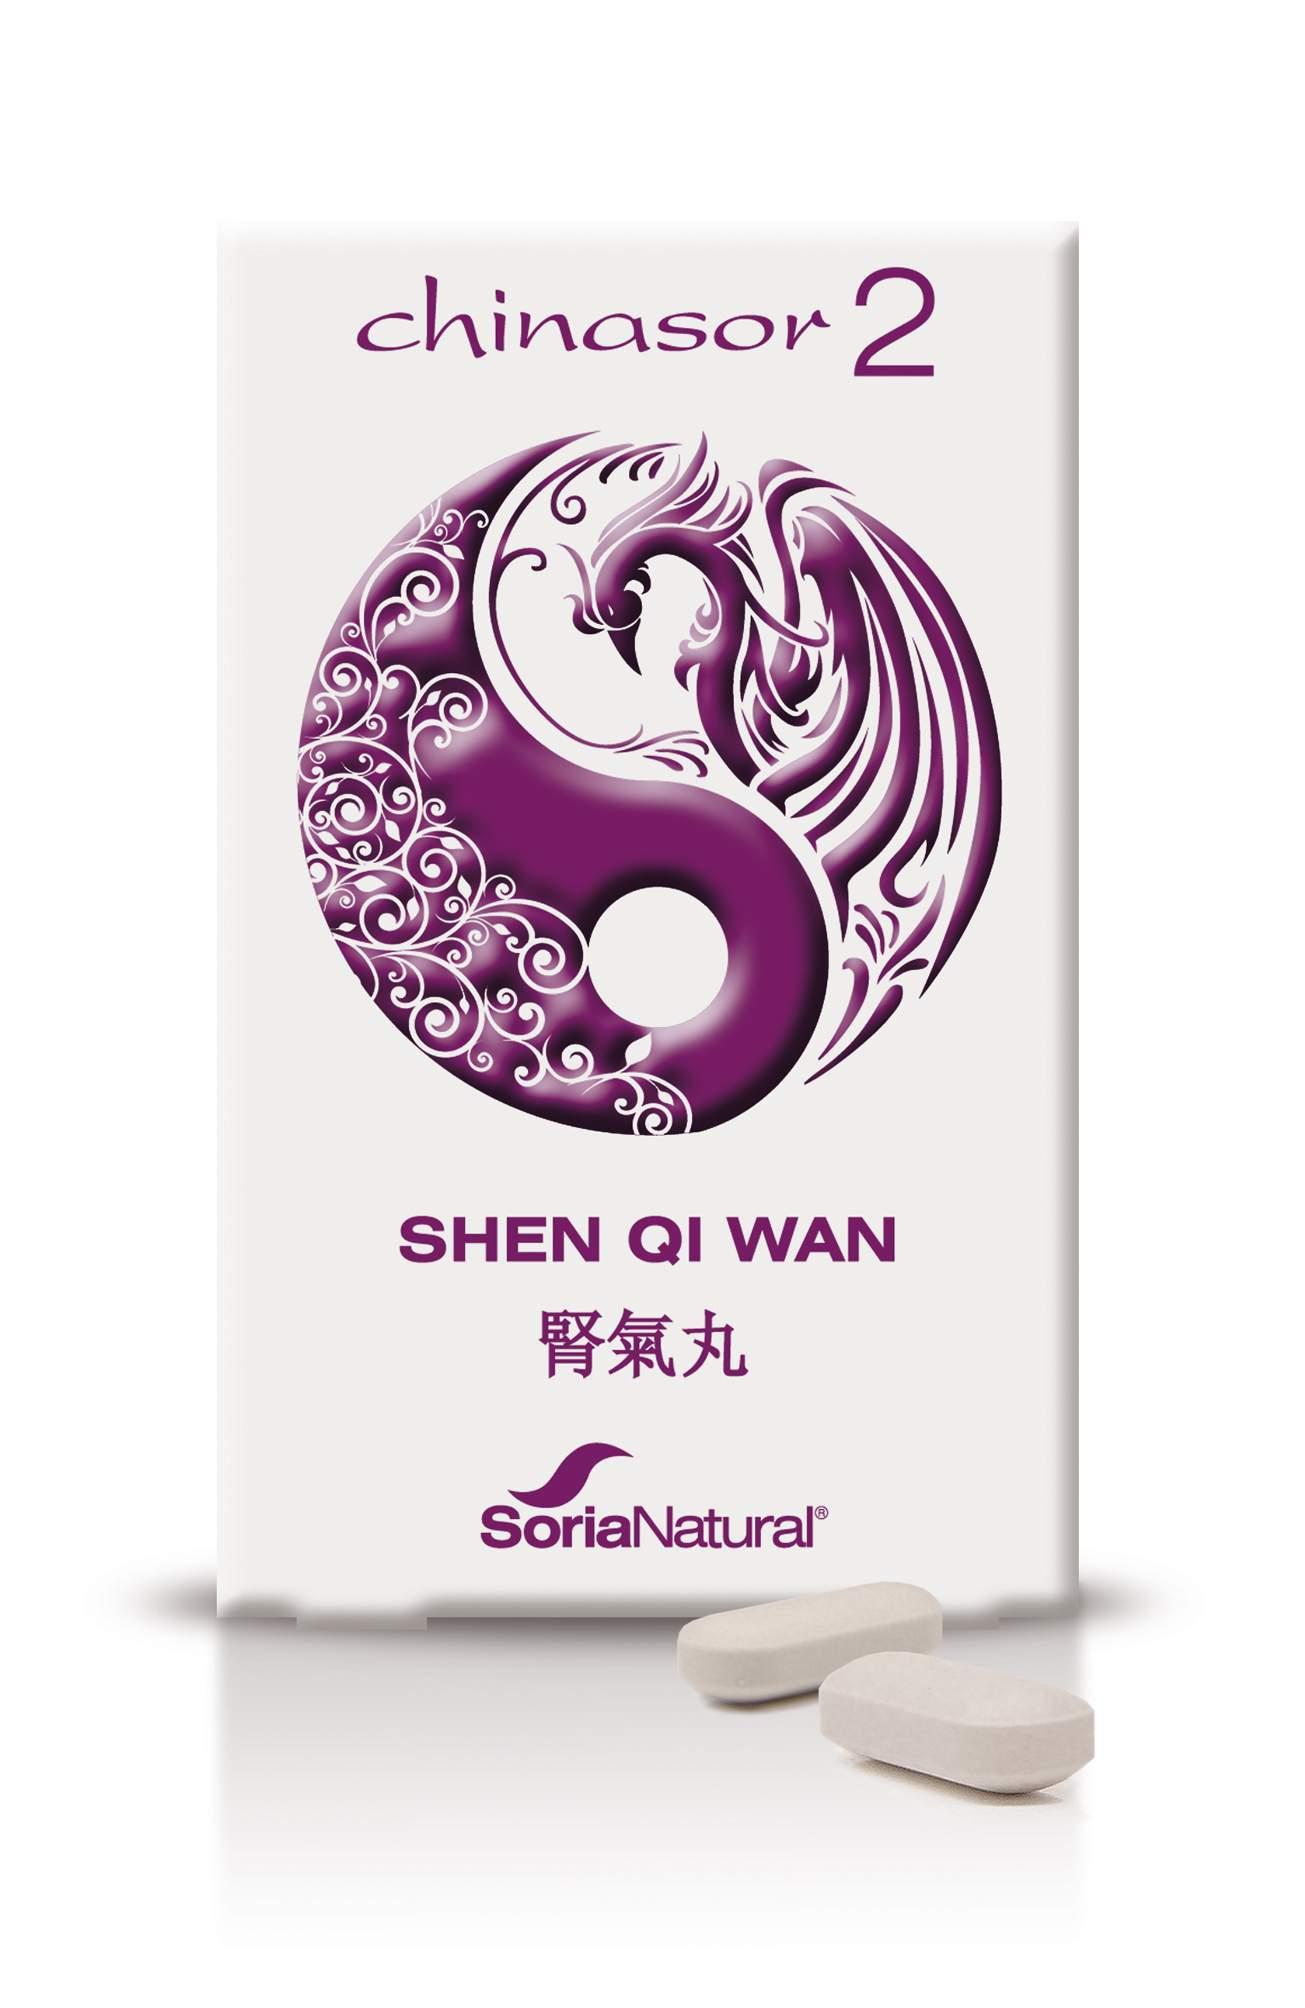 chinasor-02-shen-qi-wan